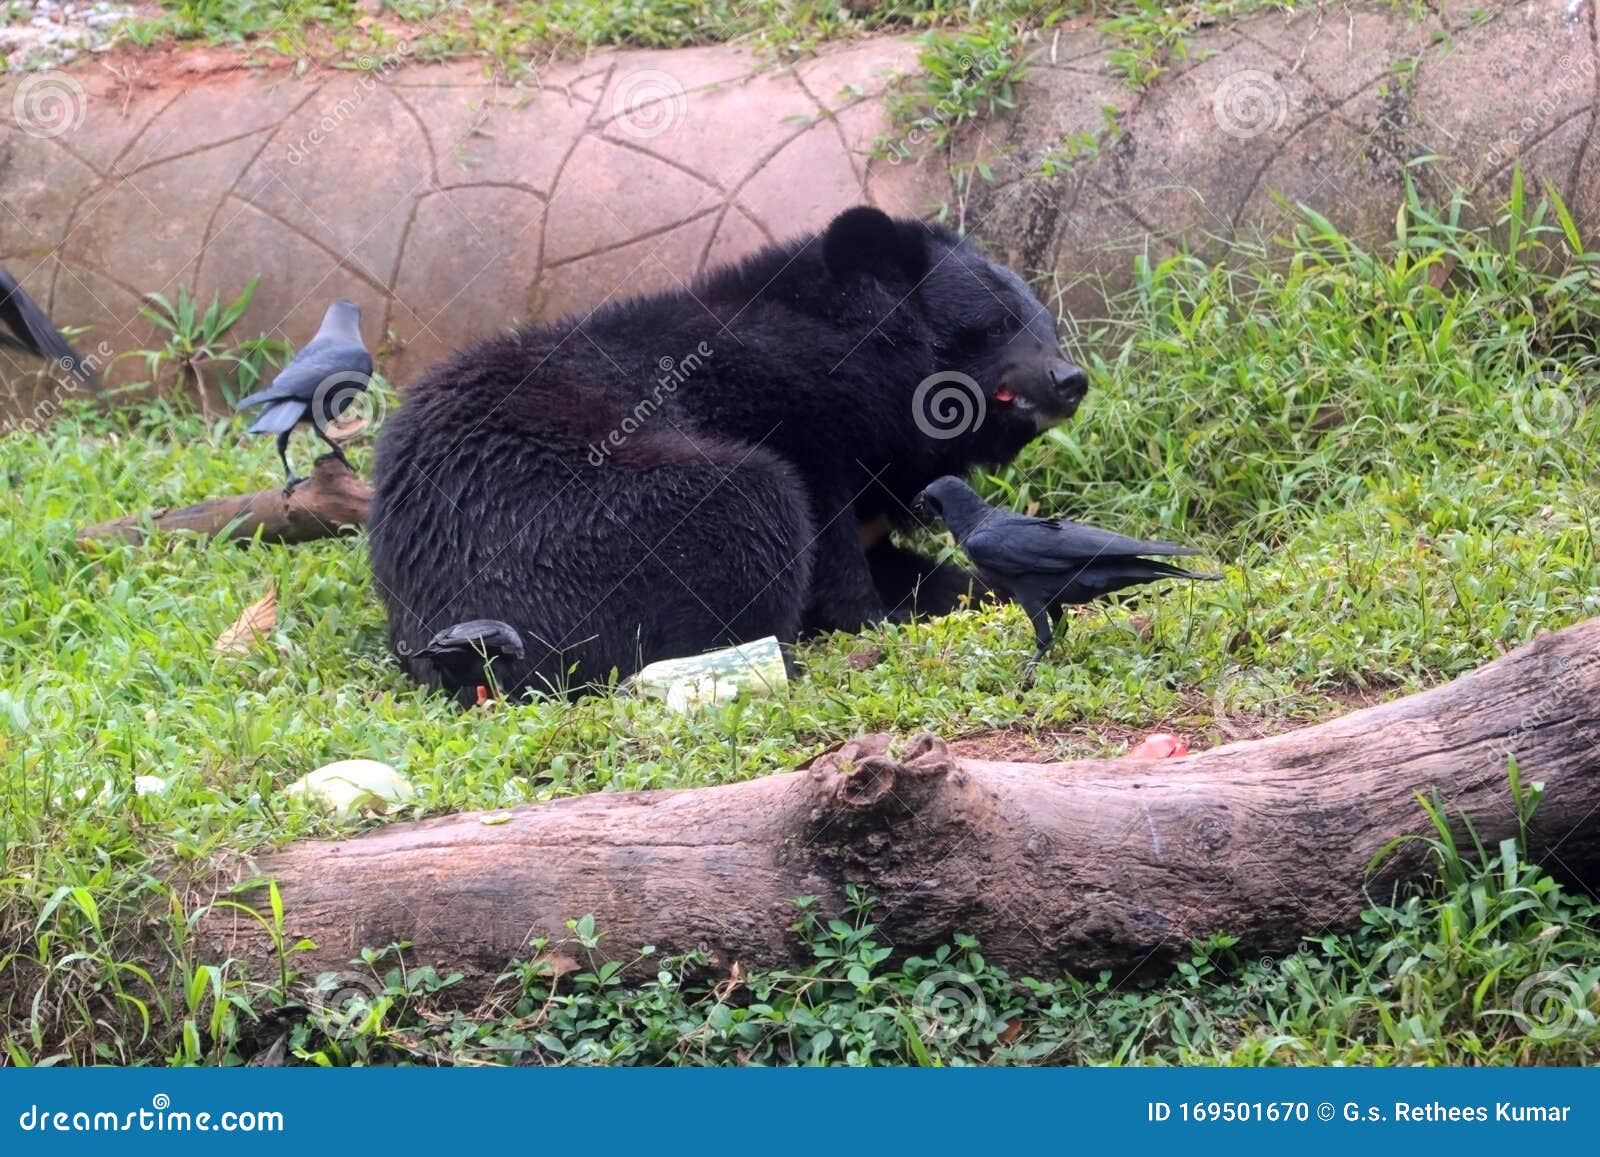 亚洲黑熊高清摄影大图-千库网